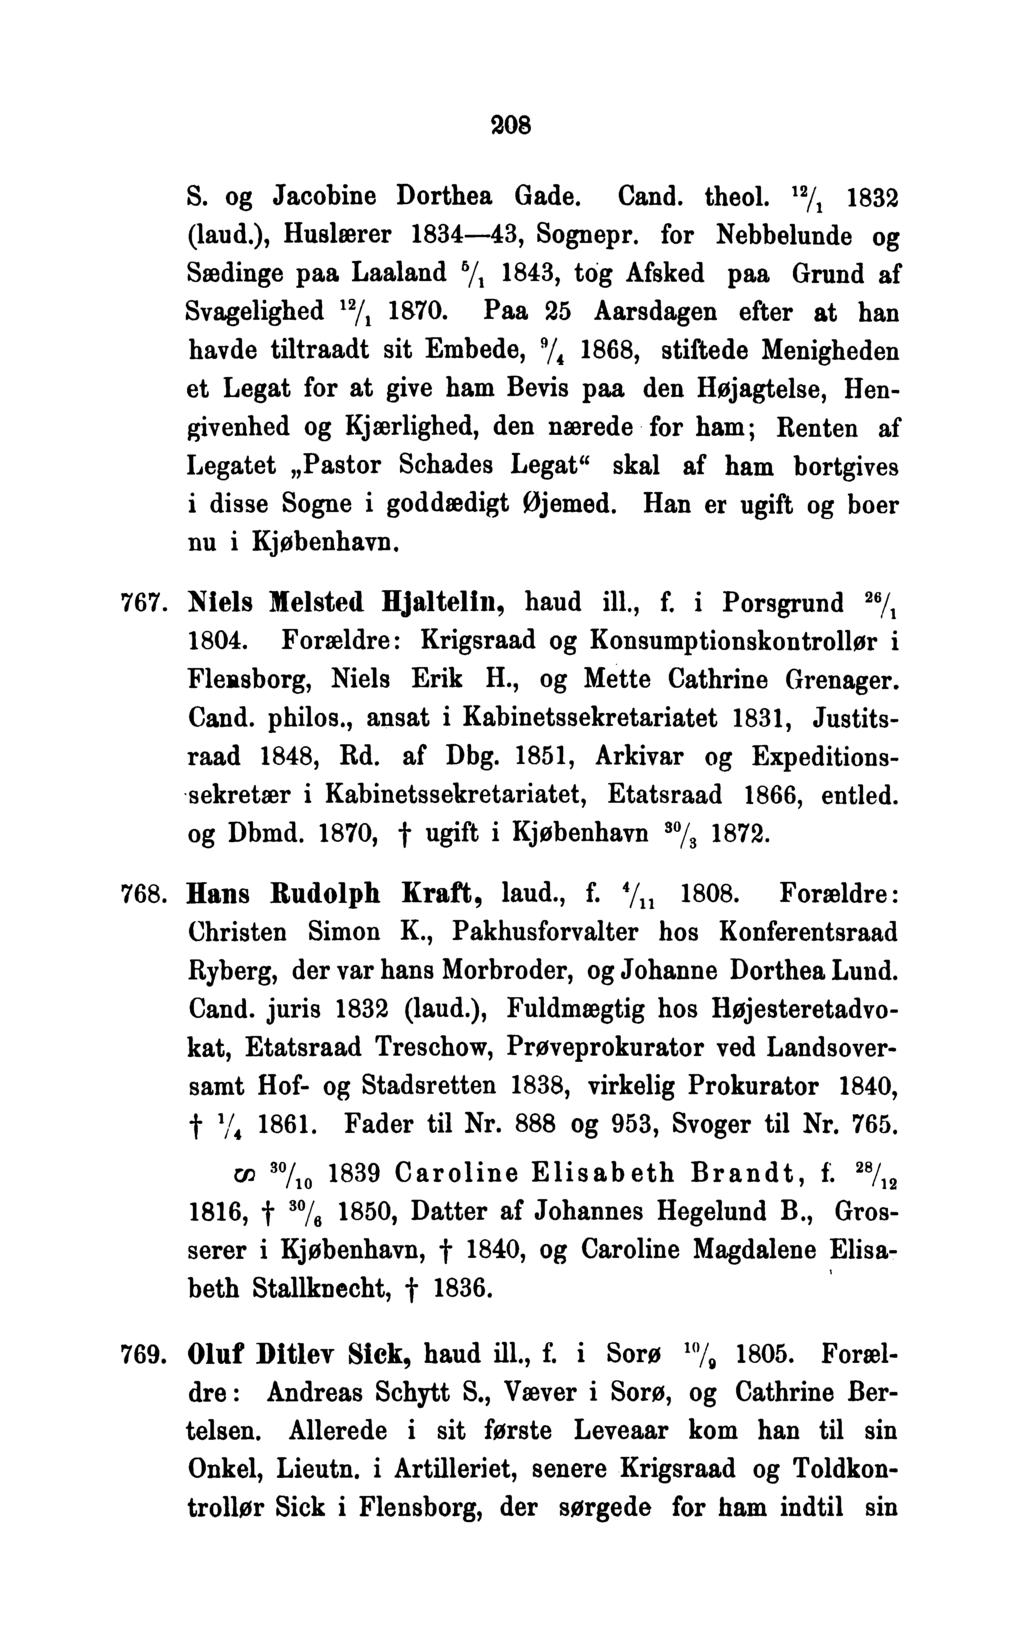 MEDDELELSER. DIMITTEREDE fra G. L. WAD, ALBERT FRA SKOLENS STIFTELSE 1565 TIL 1875, SOM MANUSKRIPT. - PDF Gratis download